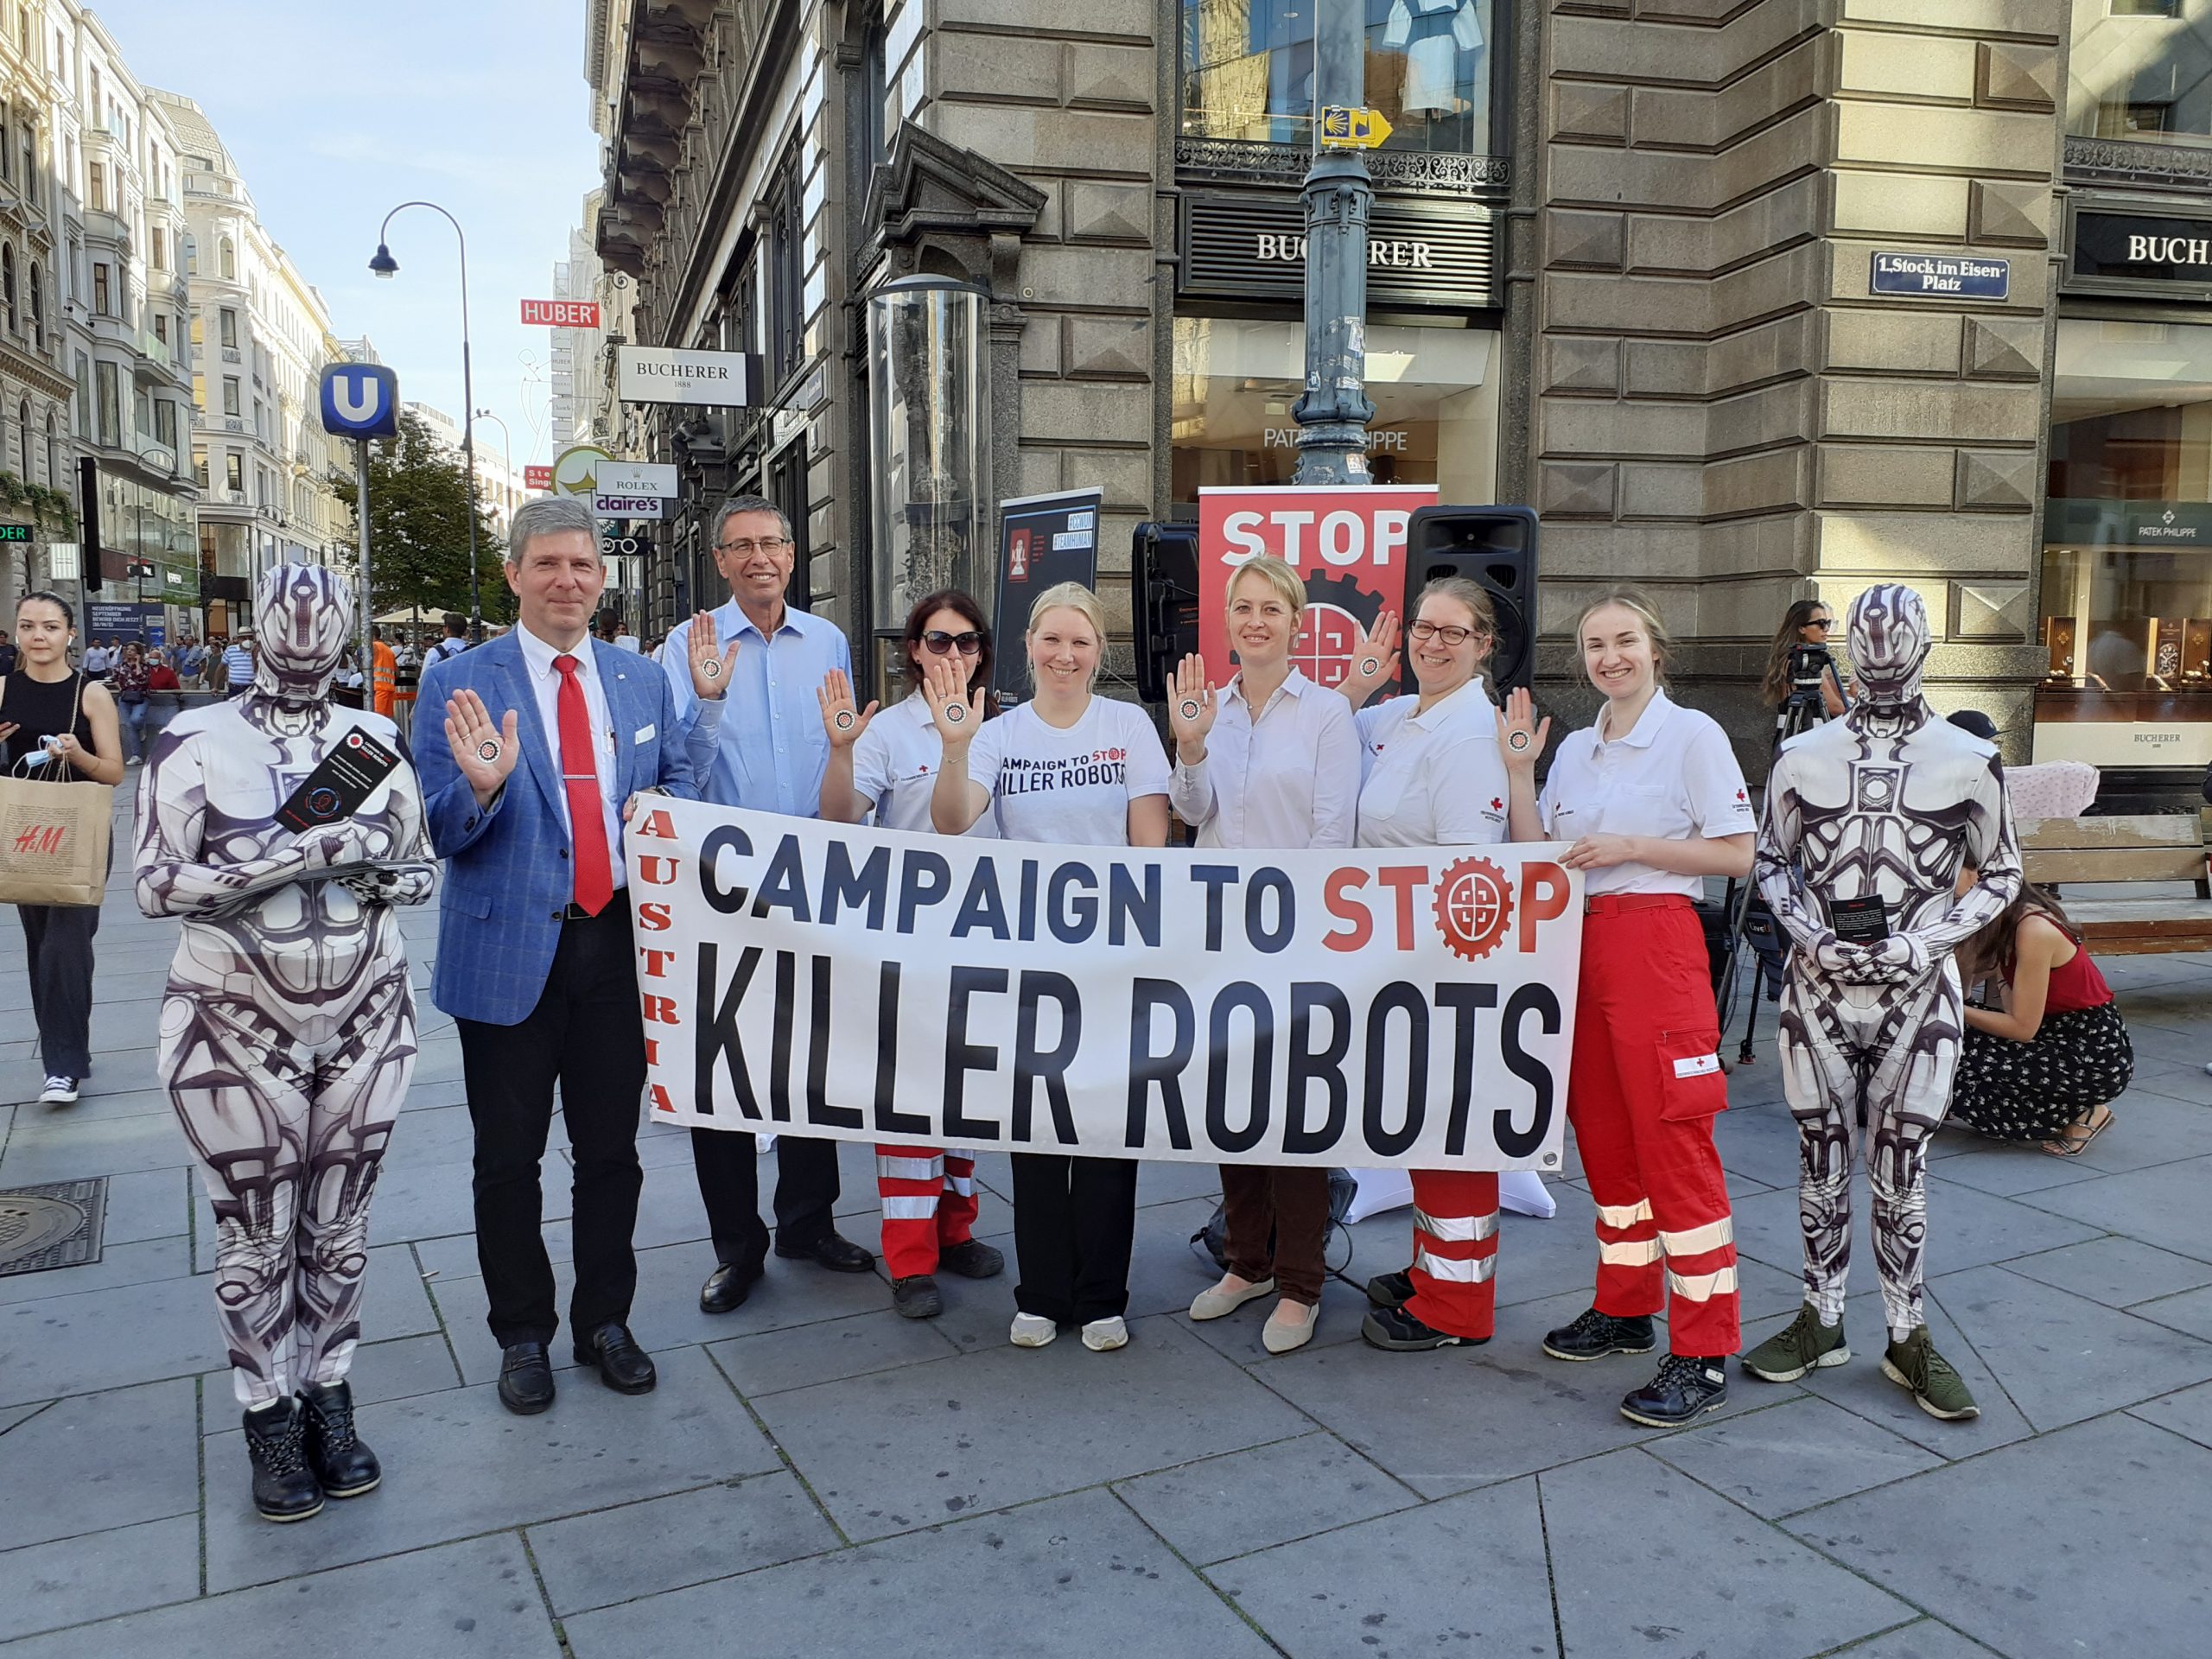 Am Freitag, den 10.09.2021 waren wir im Herzen Wiens um ein Zeichen gegen Killer Roboter zu setzen!